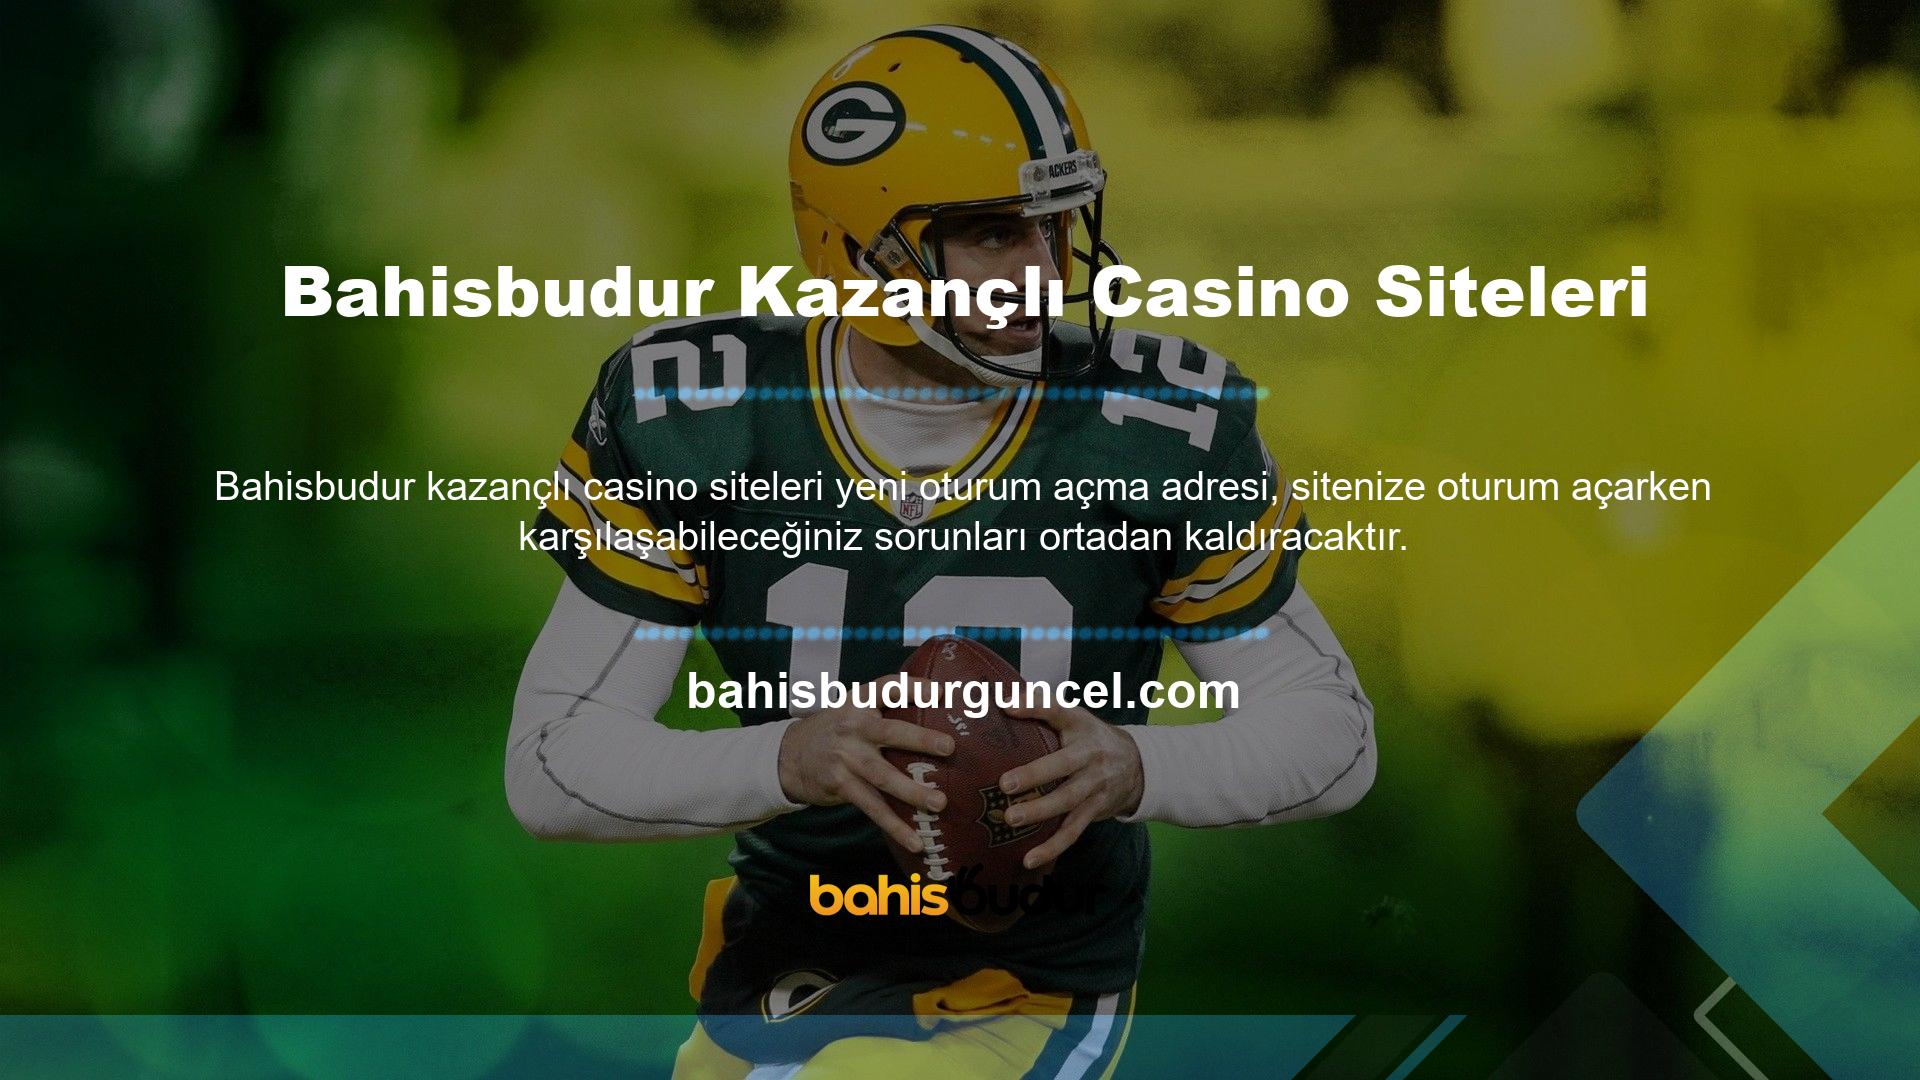 Daha önceki baskılarda da gündemde olan adres değişikliği ne yazık ki tekrarlandı ve site, oyun tutkunlarına yönelik kazançlı Bahisbudur casino sitesinden kaçınmak için adresi yeniden doğruladı